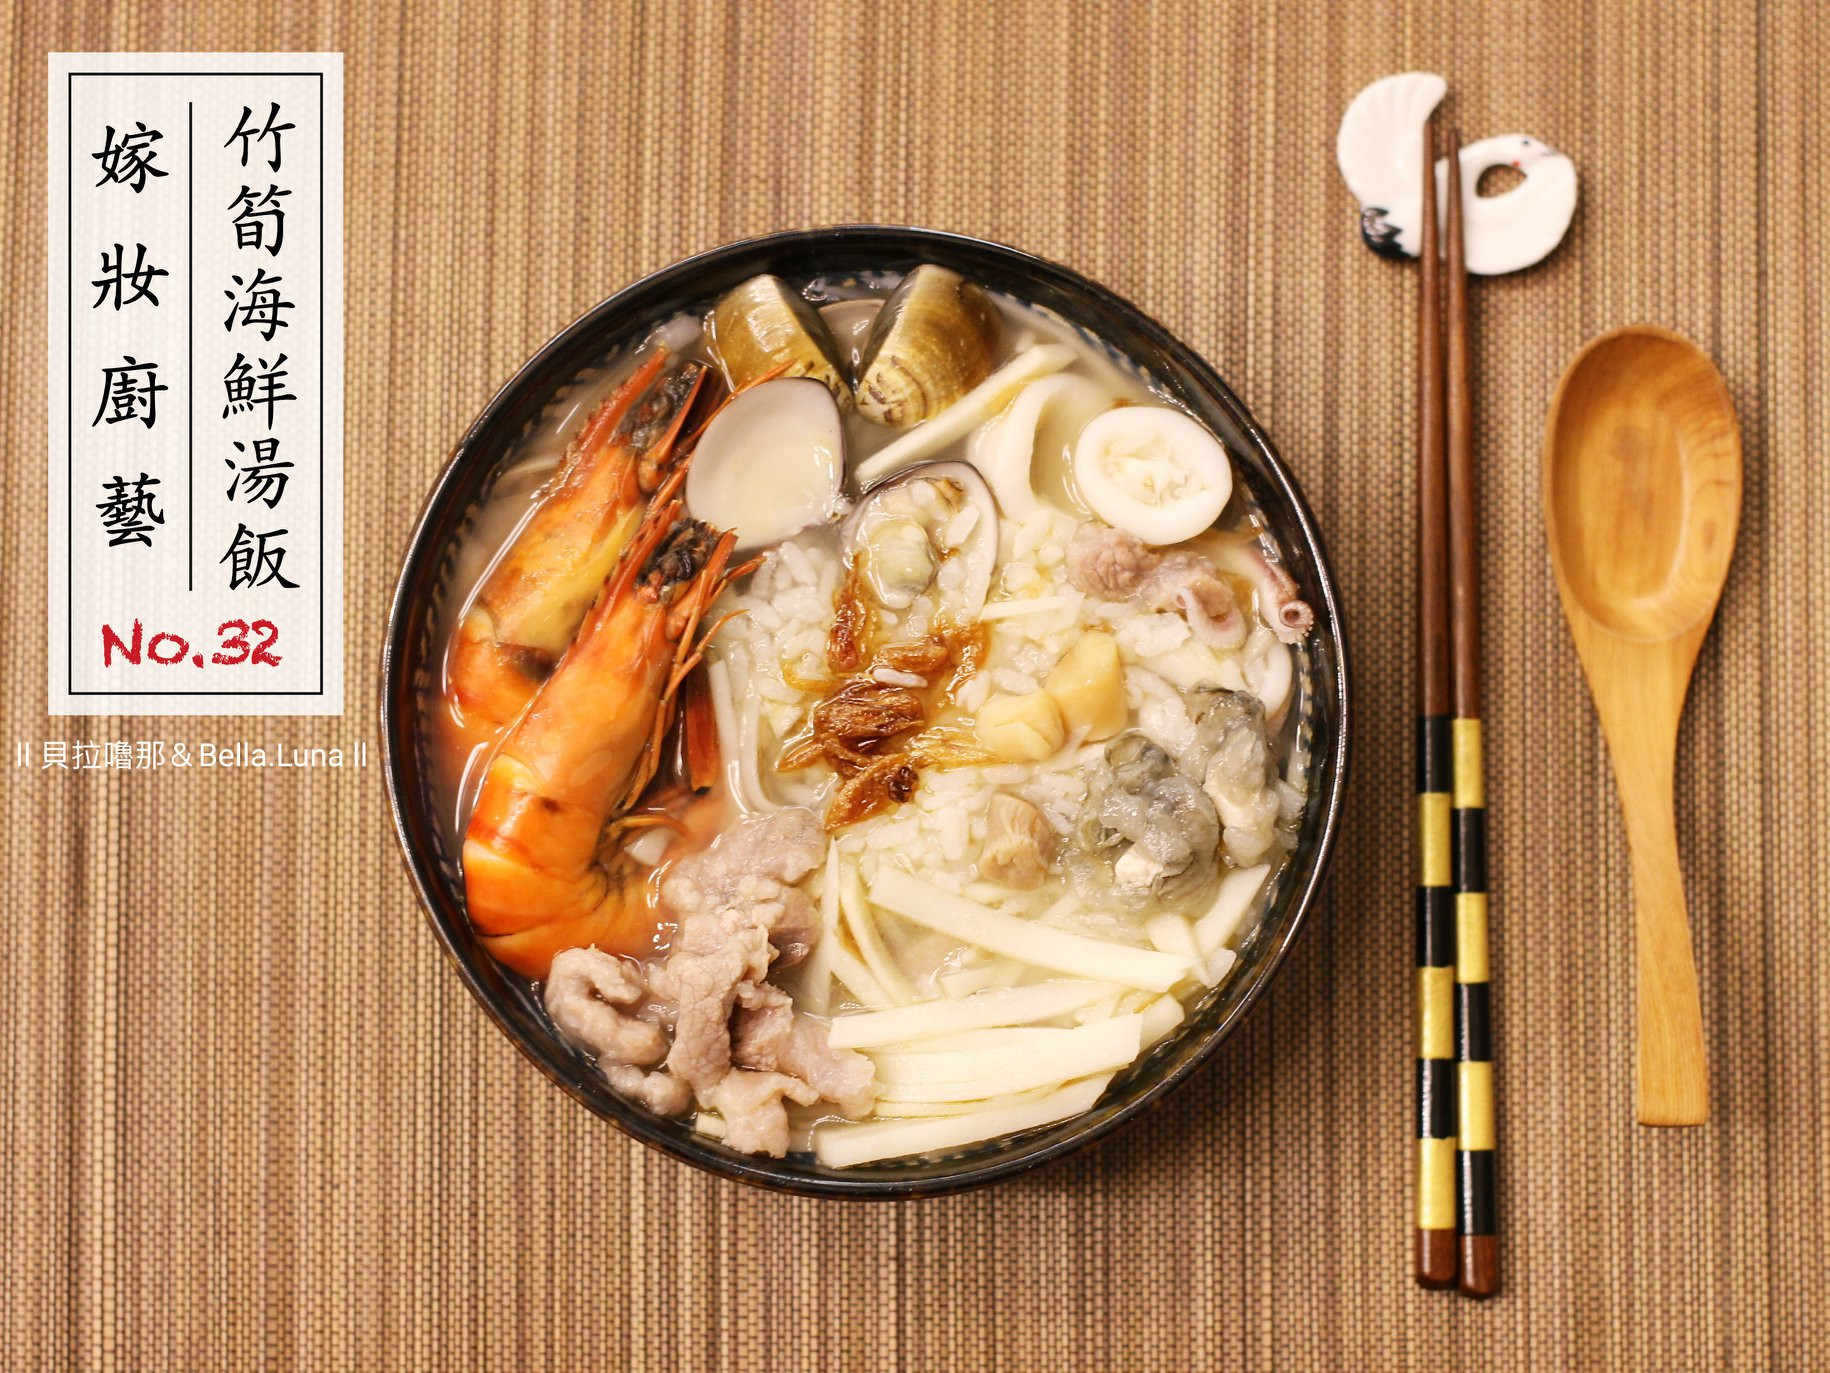 竹筍海鮮湯飯 - 不能錯過的豐盛海鮮湯飯